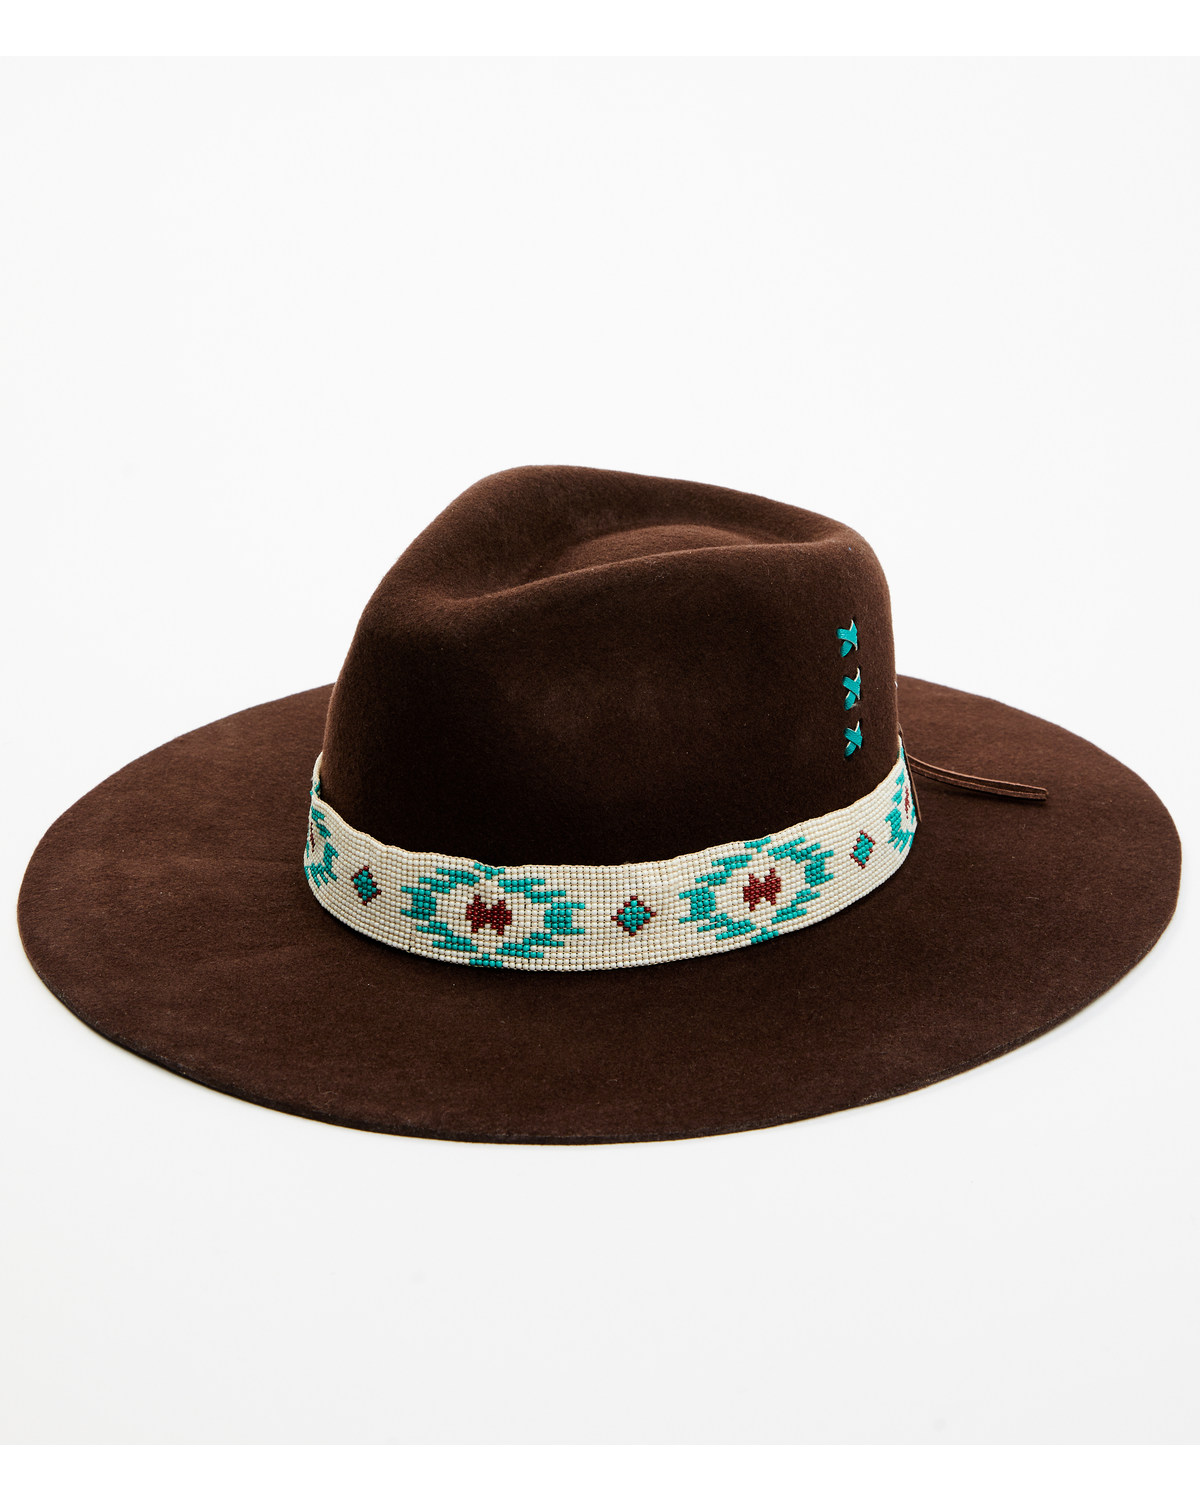 Idyllwind Women's Felt Western Fashion Hat